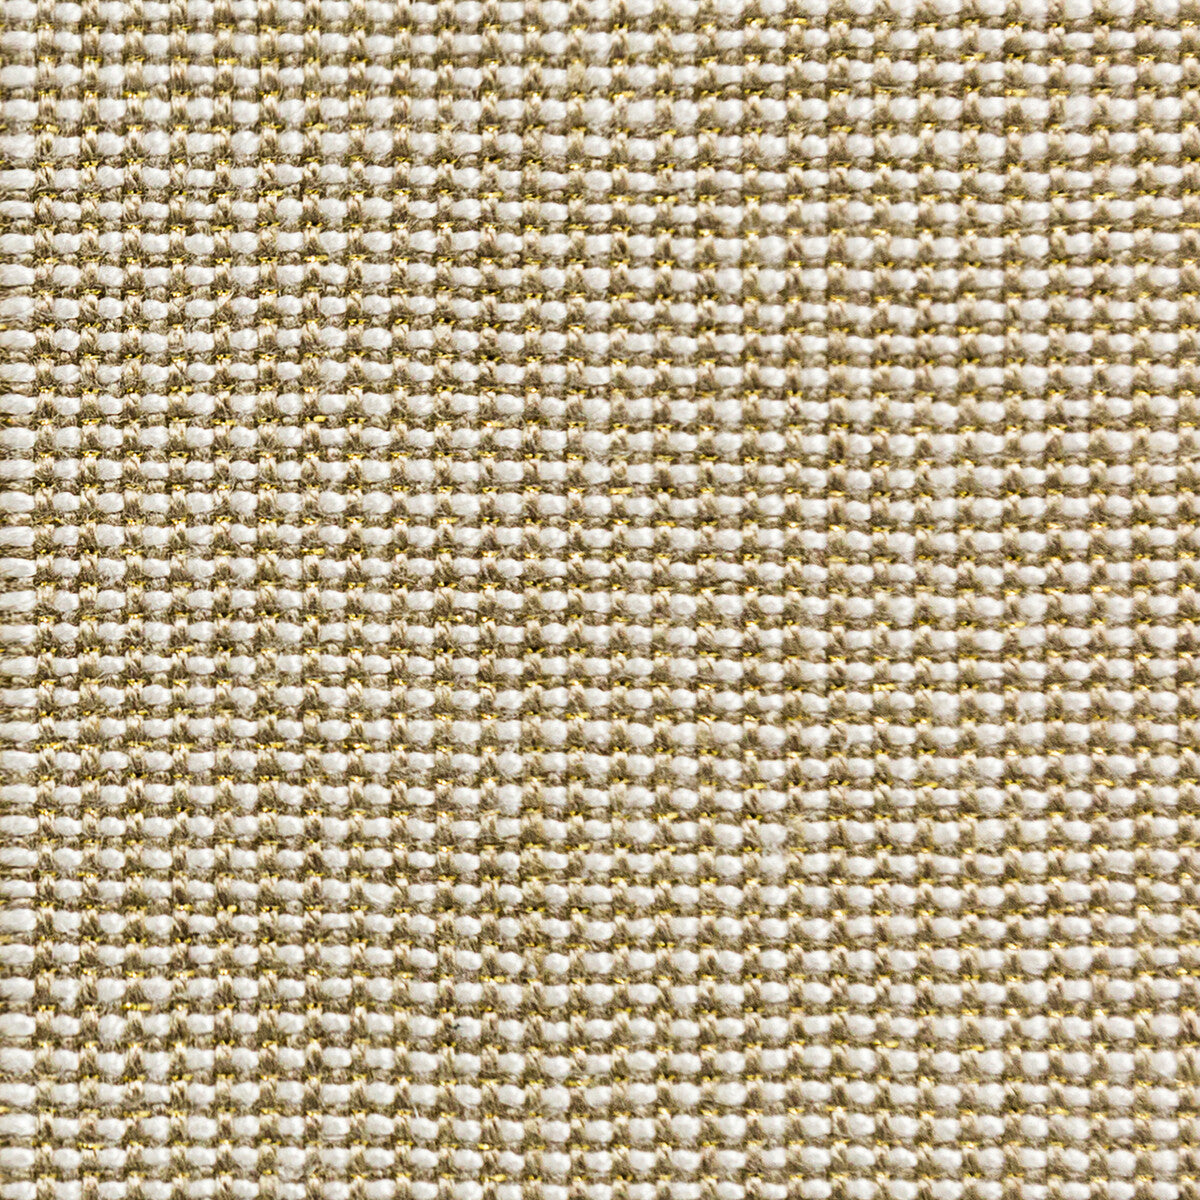 Kravet Basics fabric in 35785-16 color - pattern 35785.16.0 - by Kravet Basics